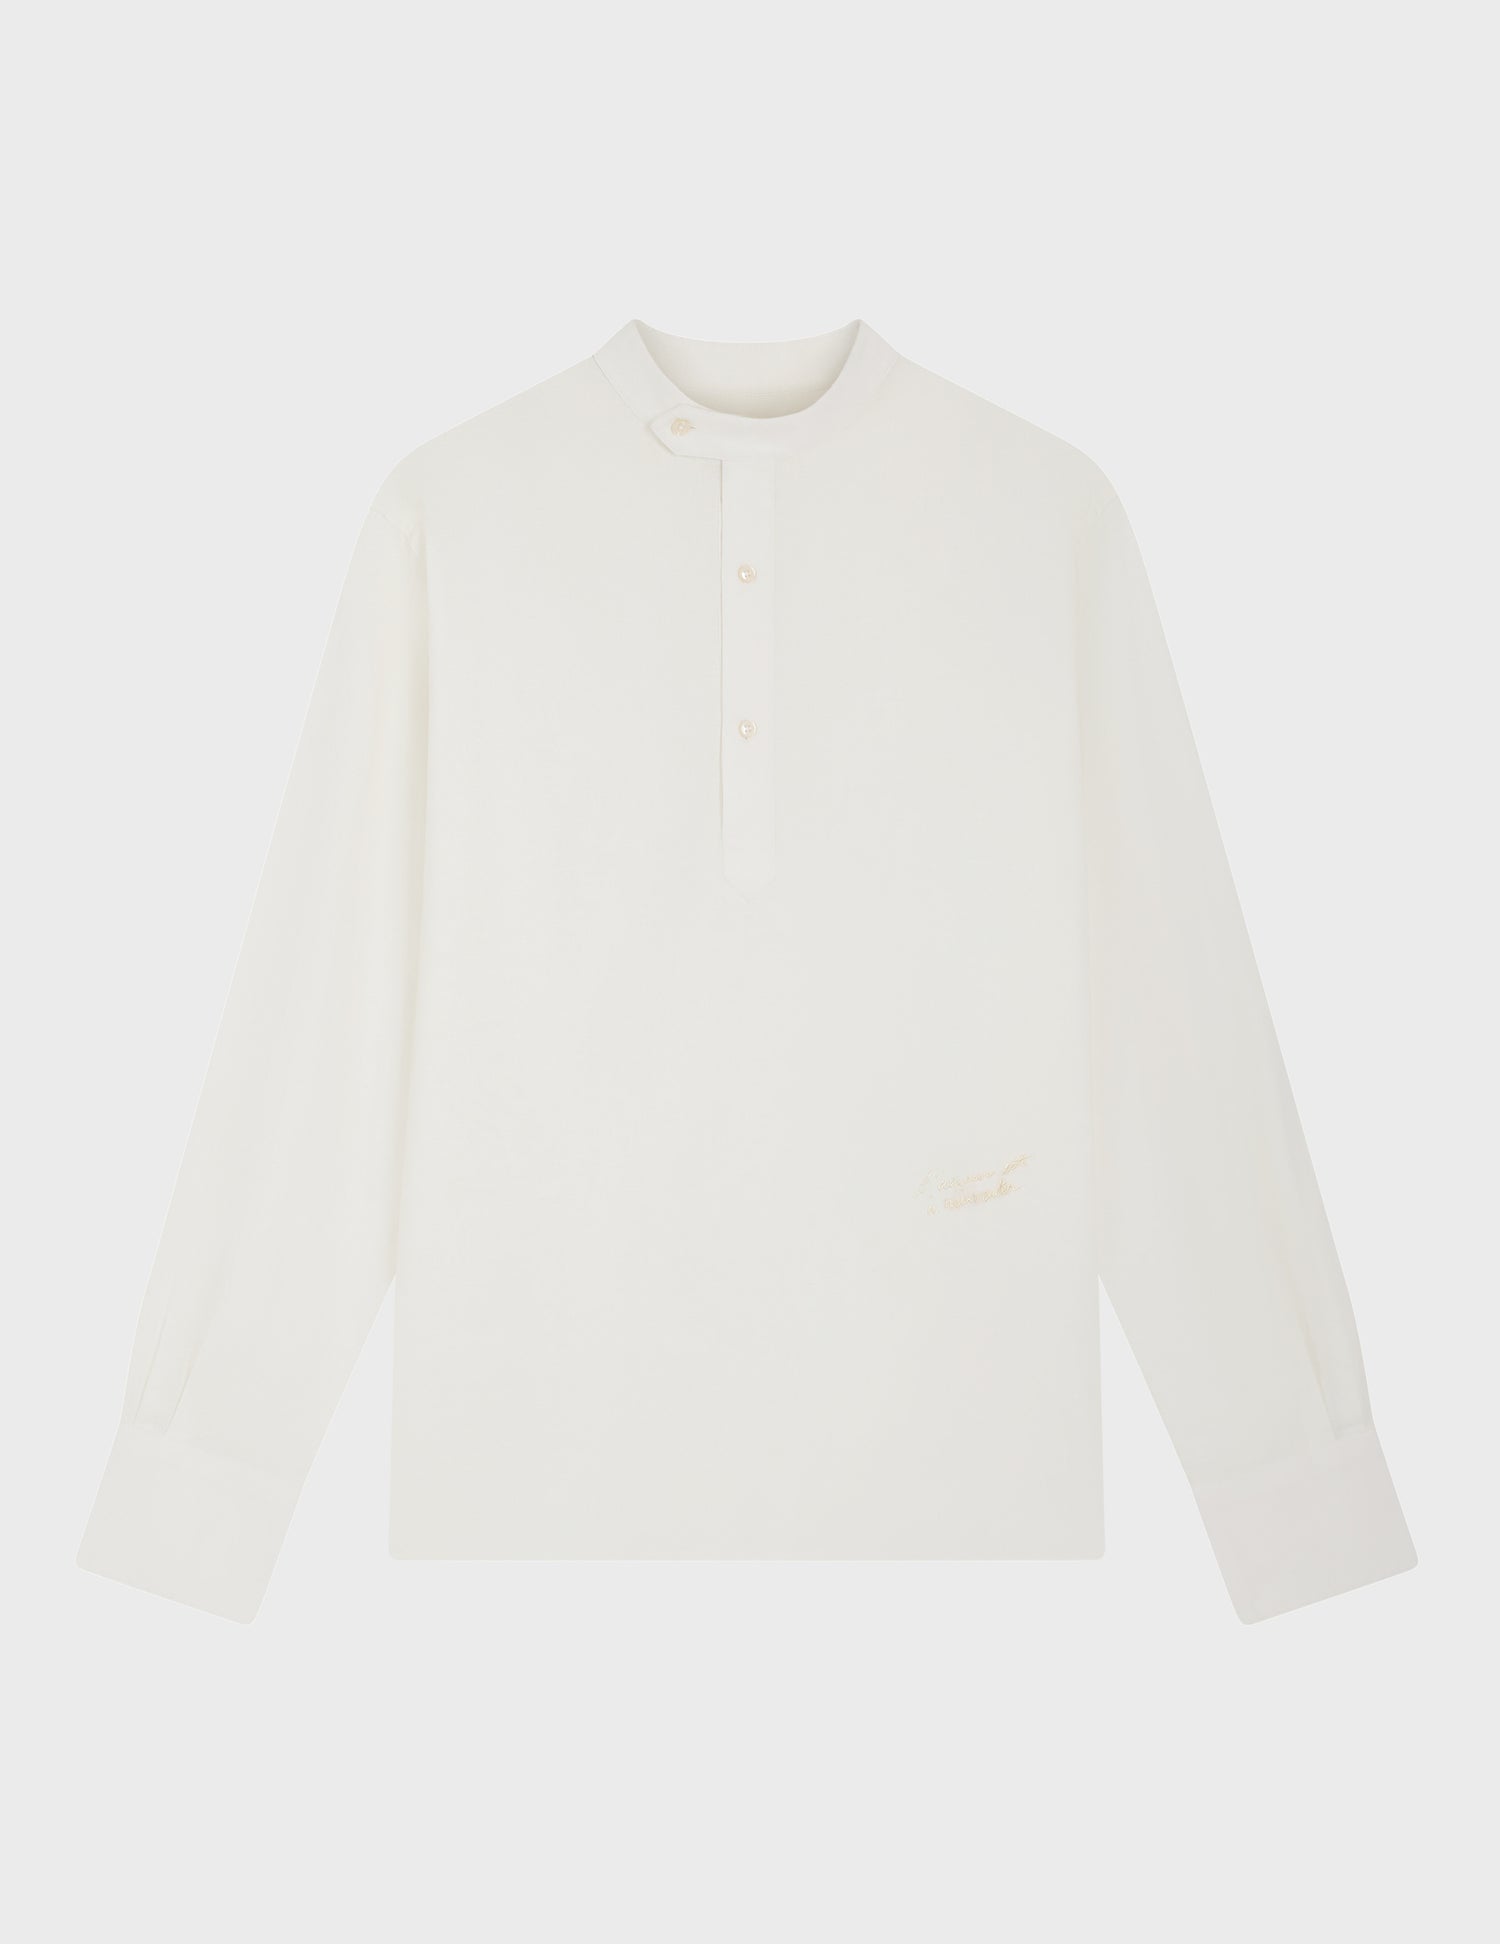 Arthur ecru shirt - Linen - Officer Collar#4